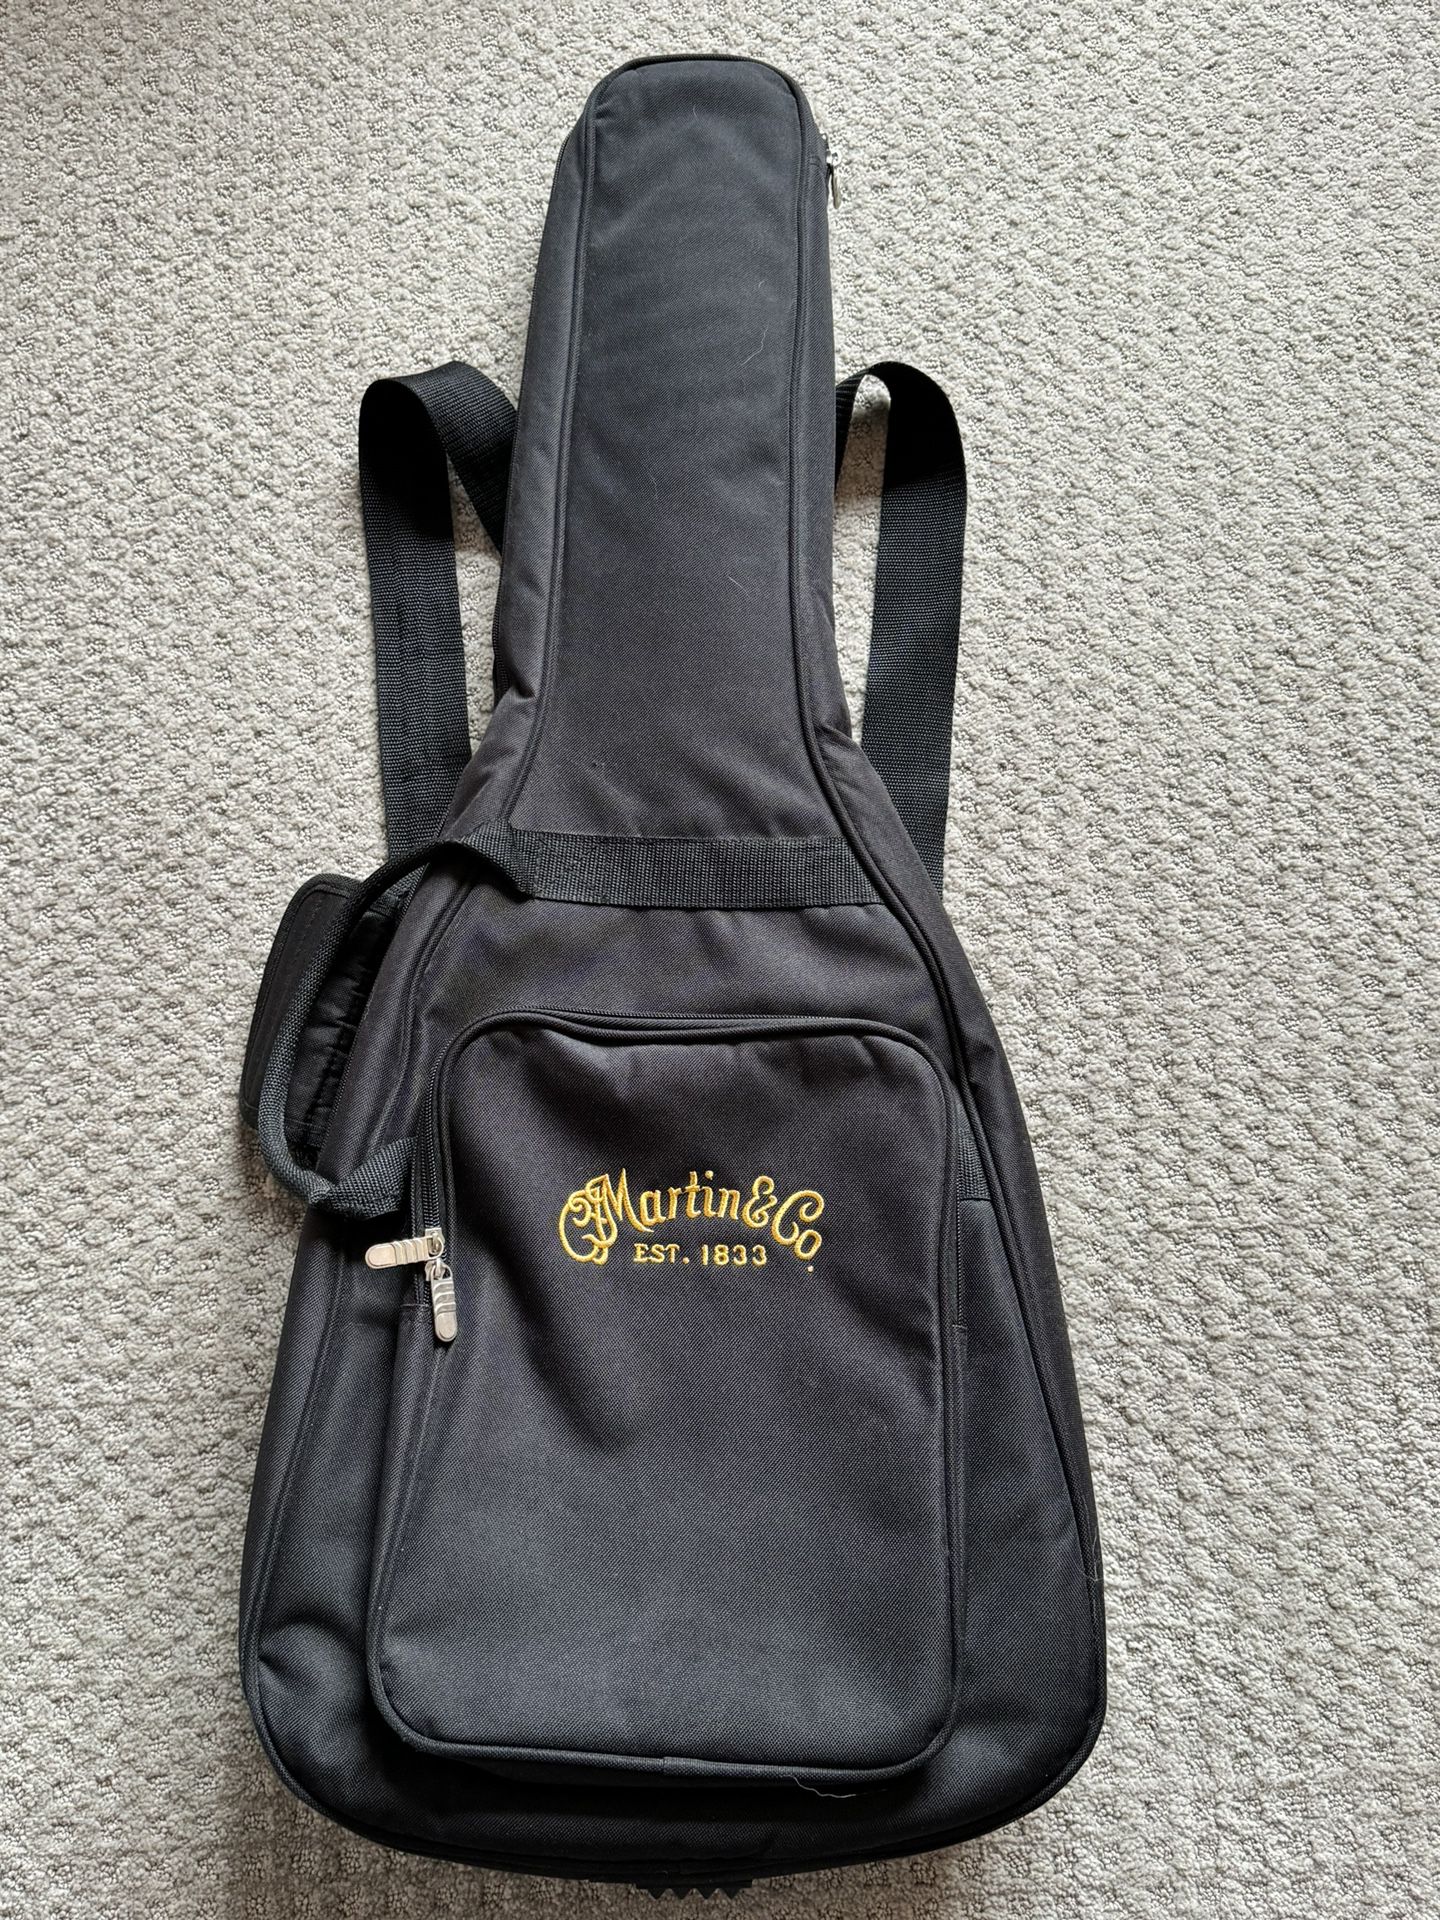 Martin & Co Guitar Carrying Bag